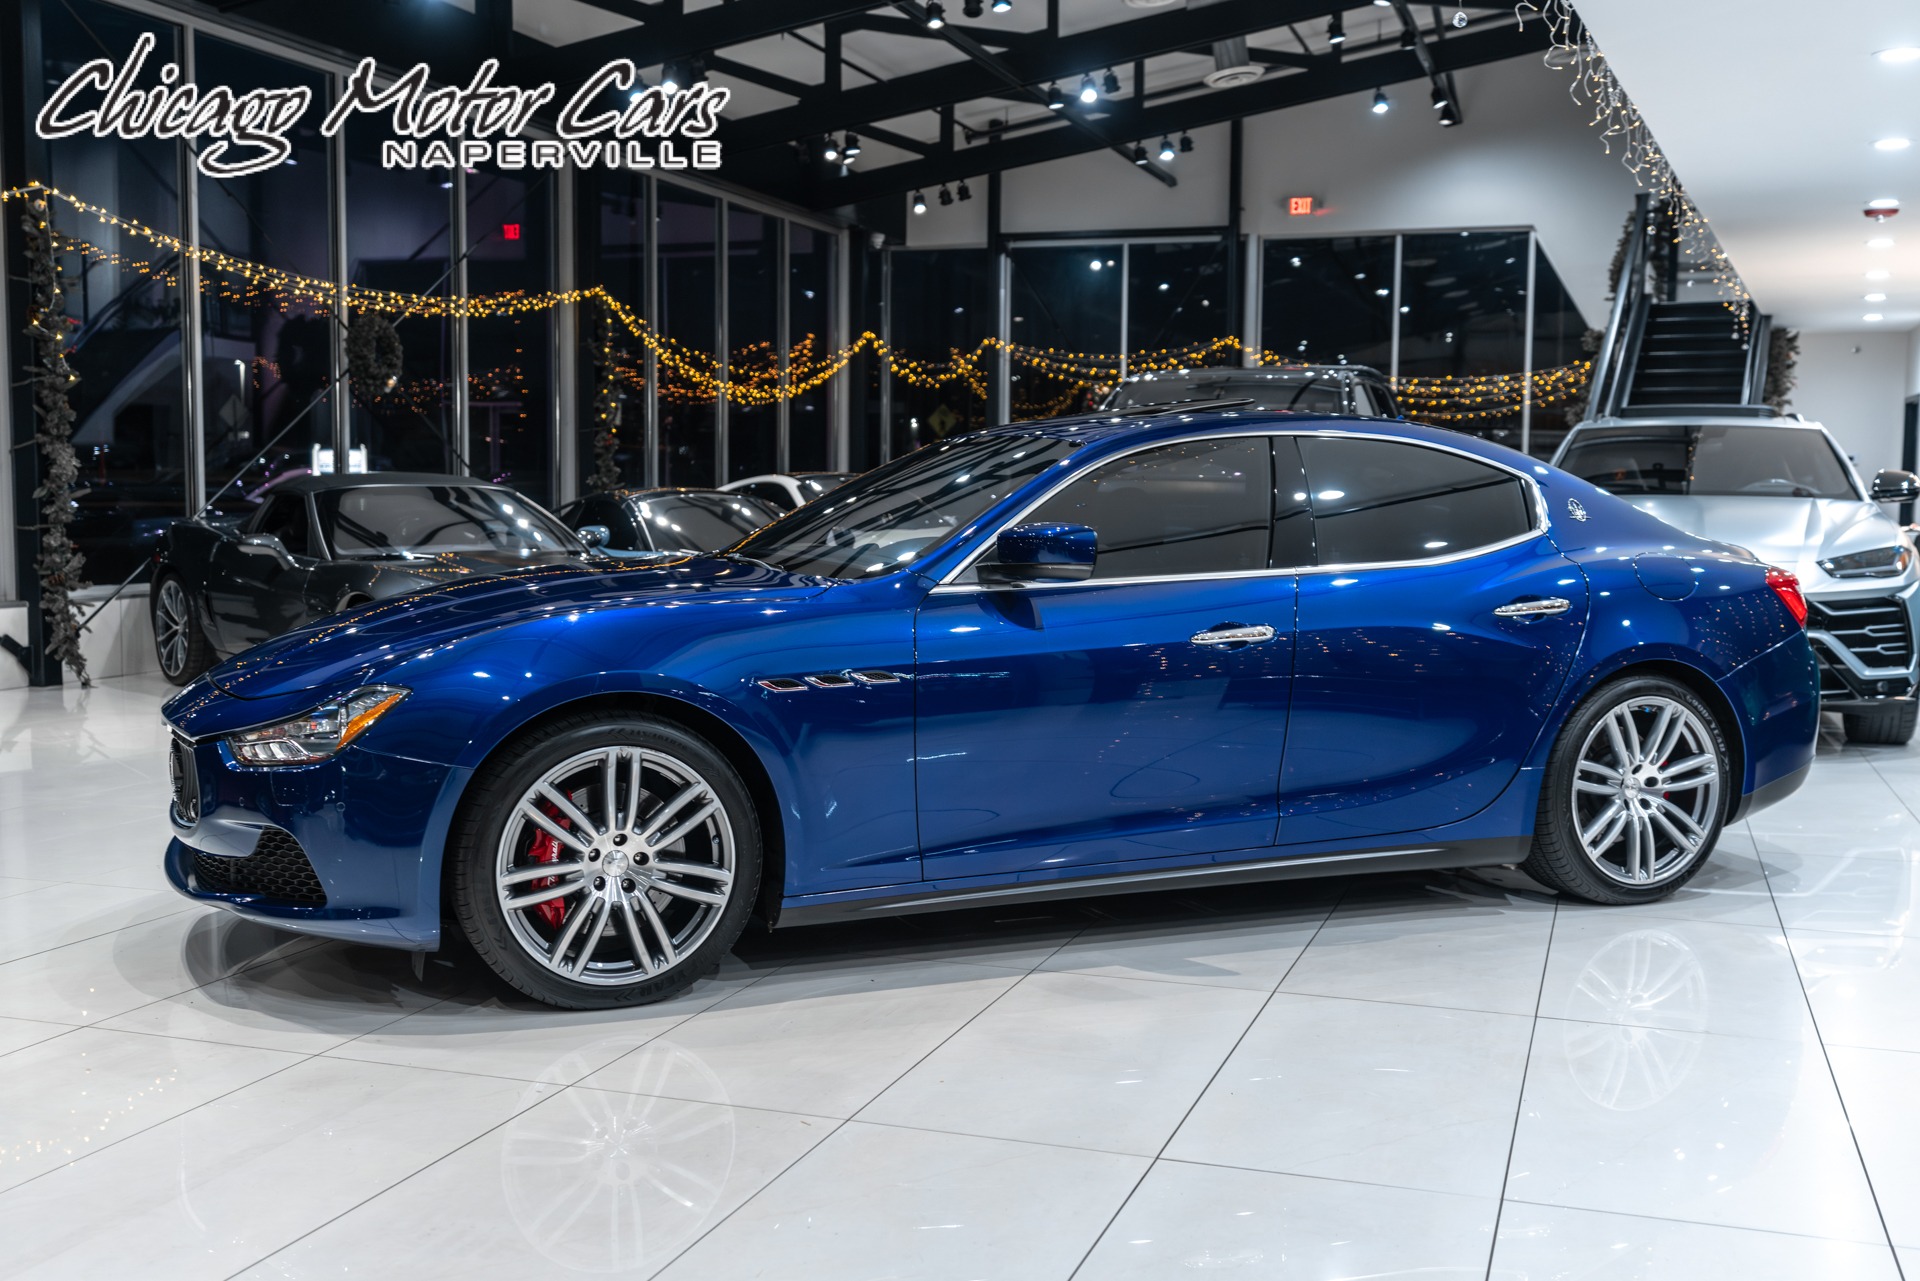 Used 2014 Maserati Ghibli S Q4 Sedan Executive Pkg! Luxury Pkg! Sport Pkg!  SUNROOF! LOADED! For Sale ($19,800)